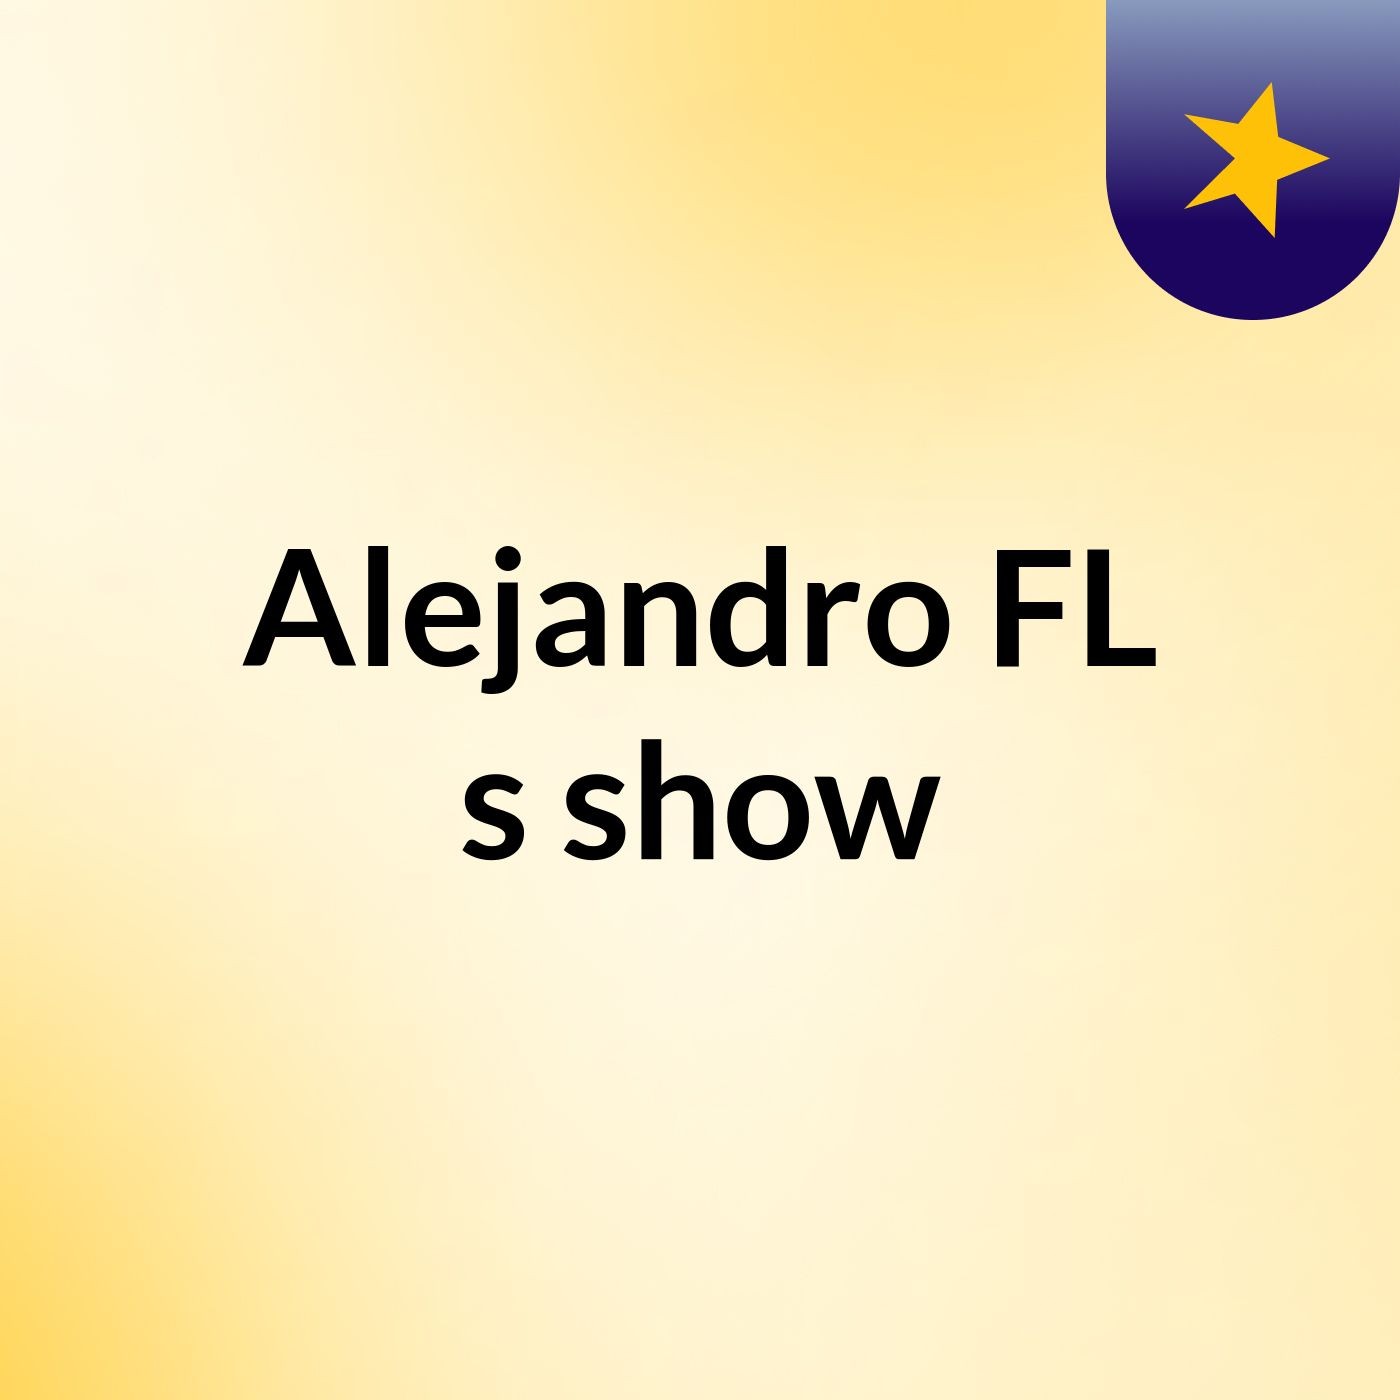 Alejandro FL's show